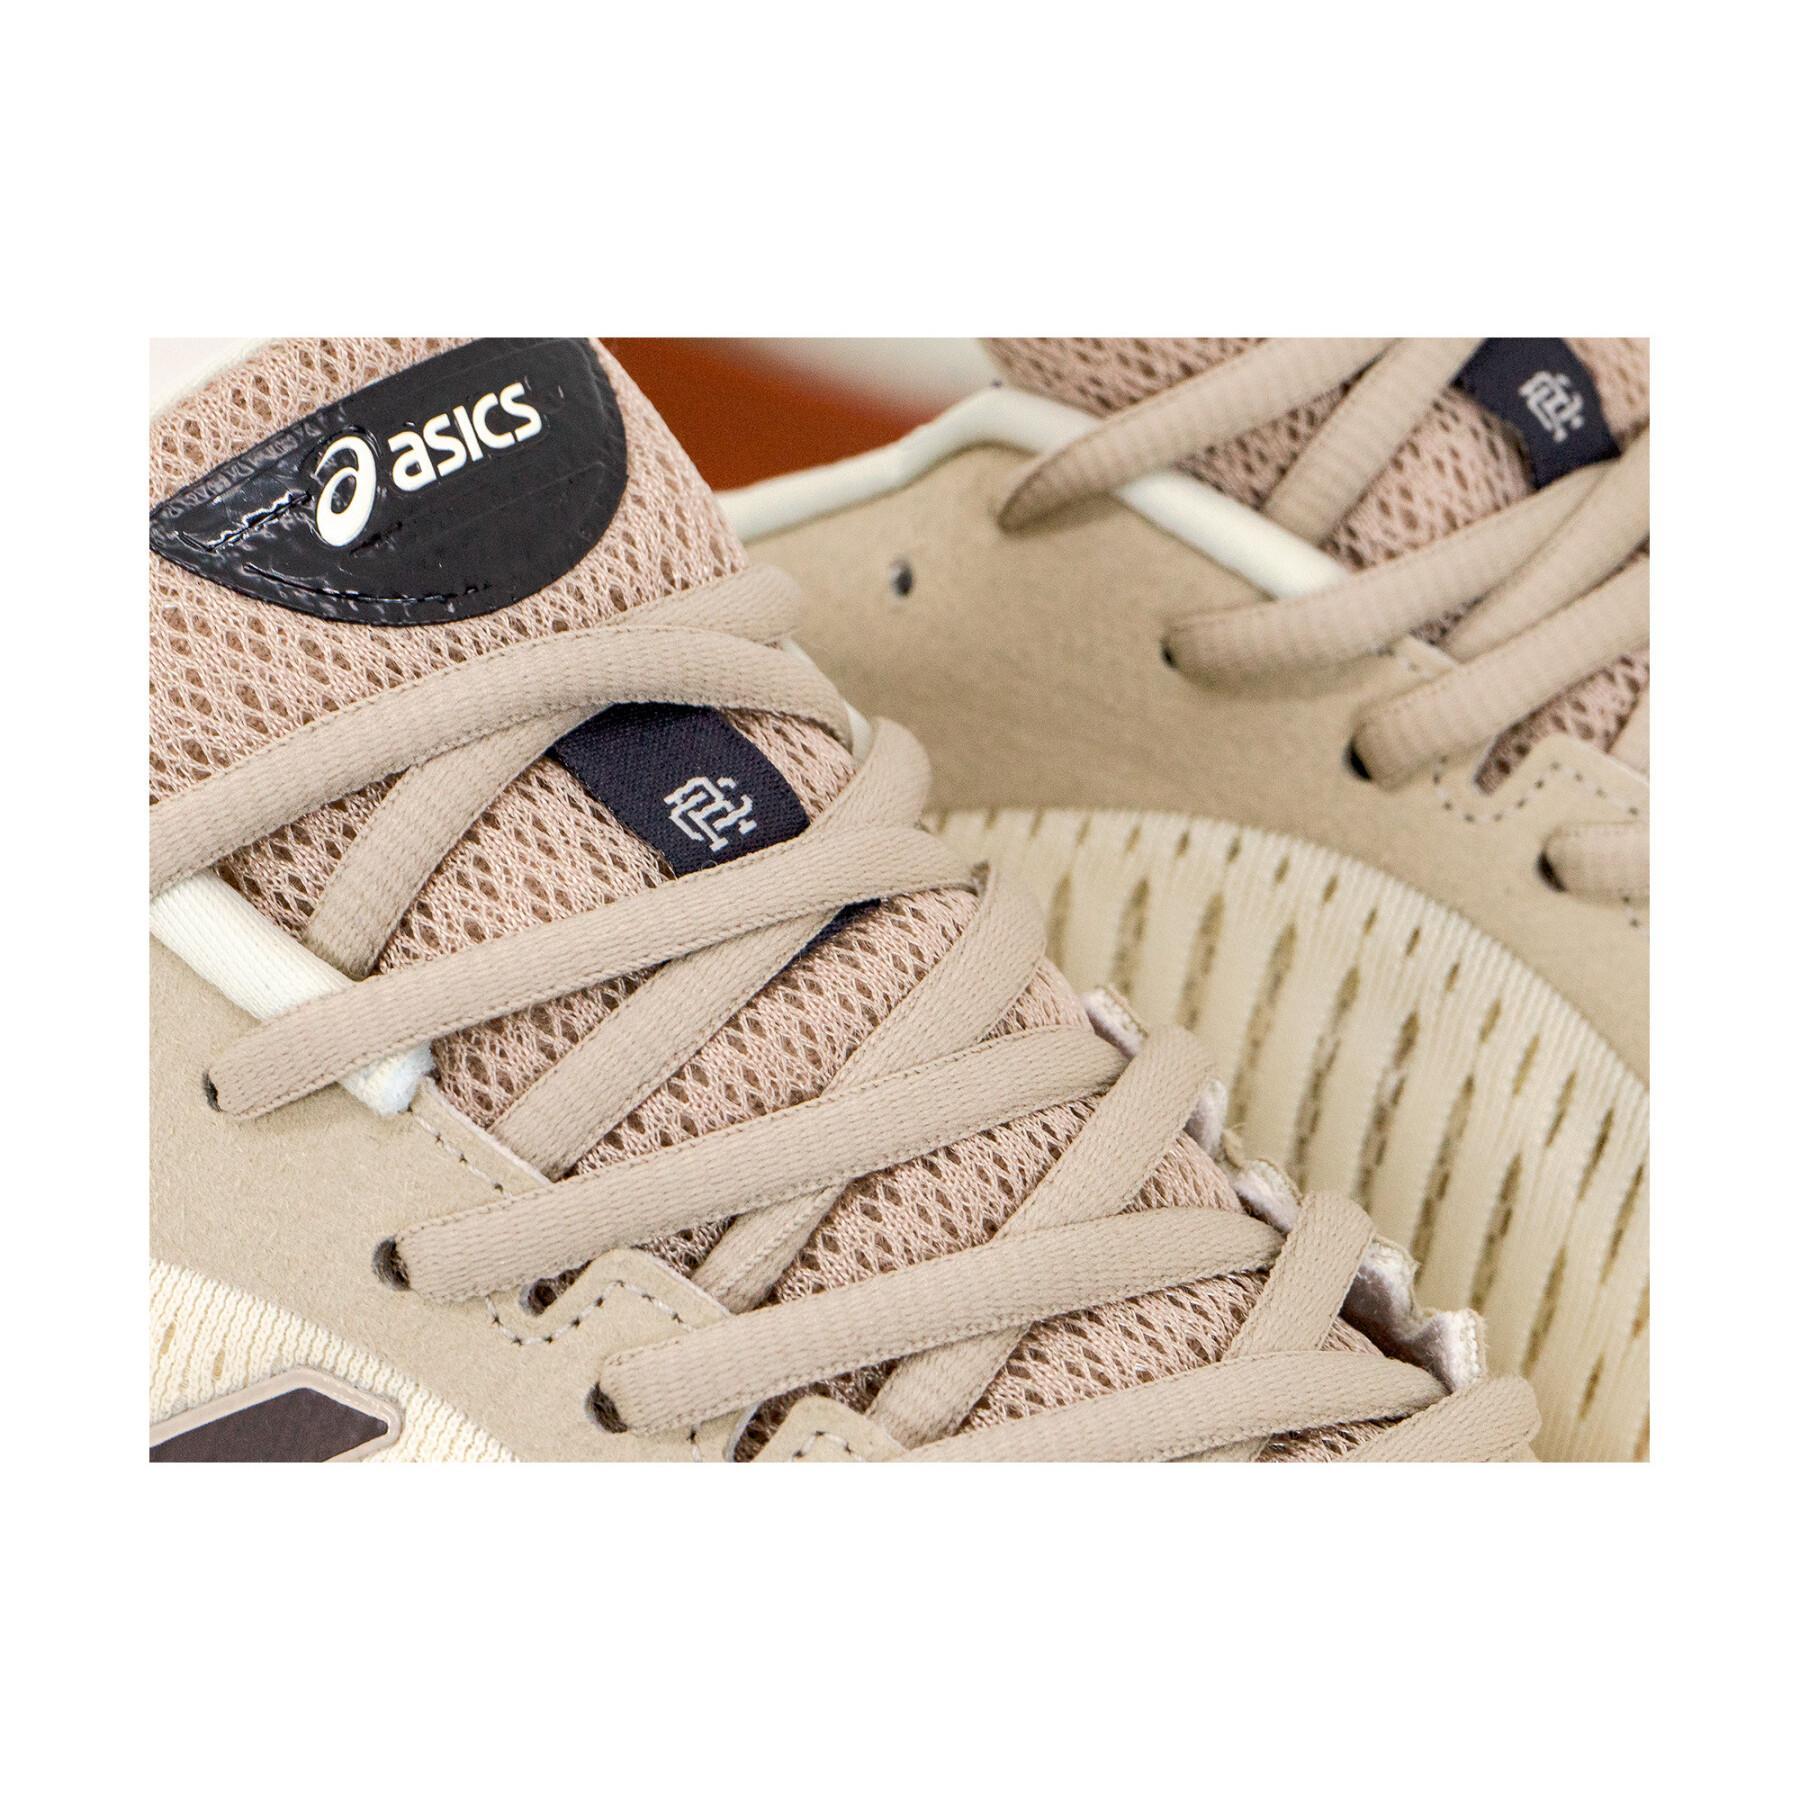 Schuhe Asics Gel-kayano 25